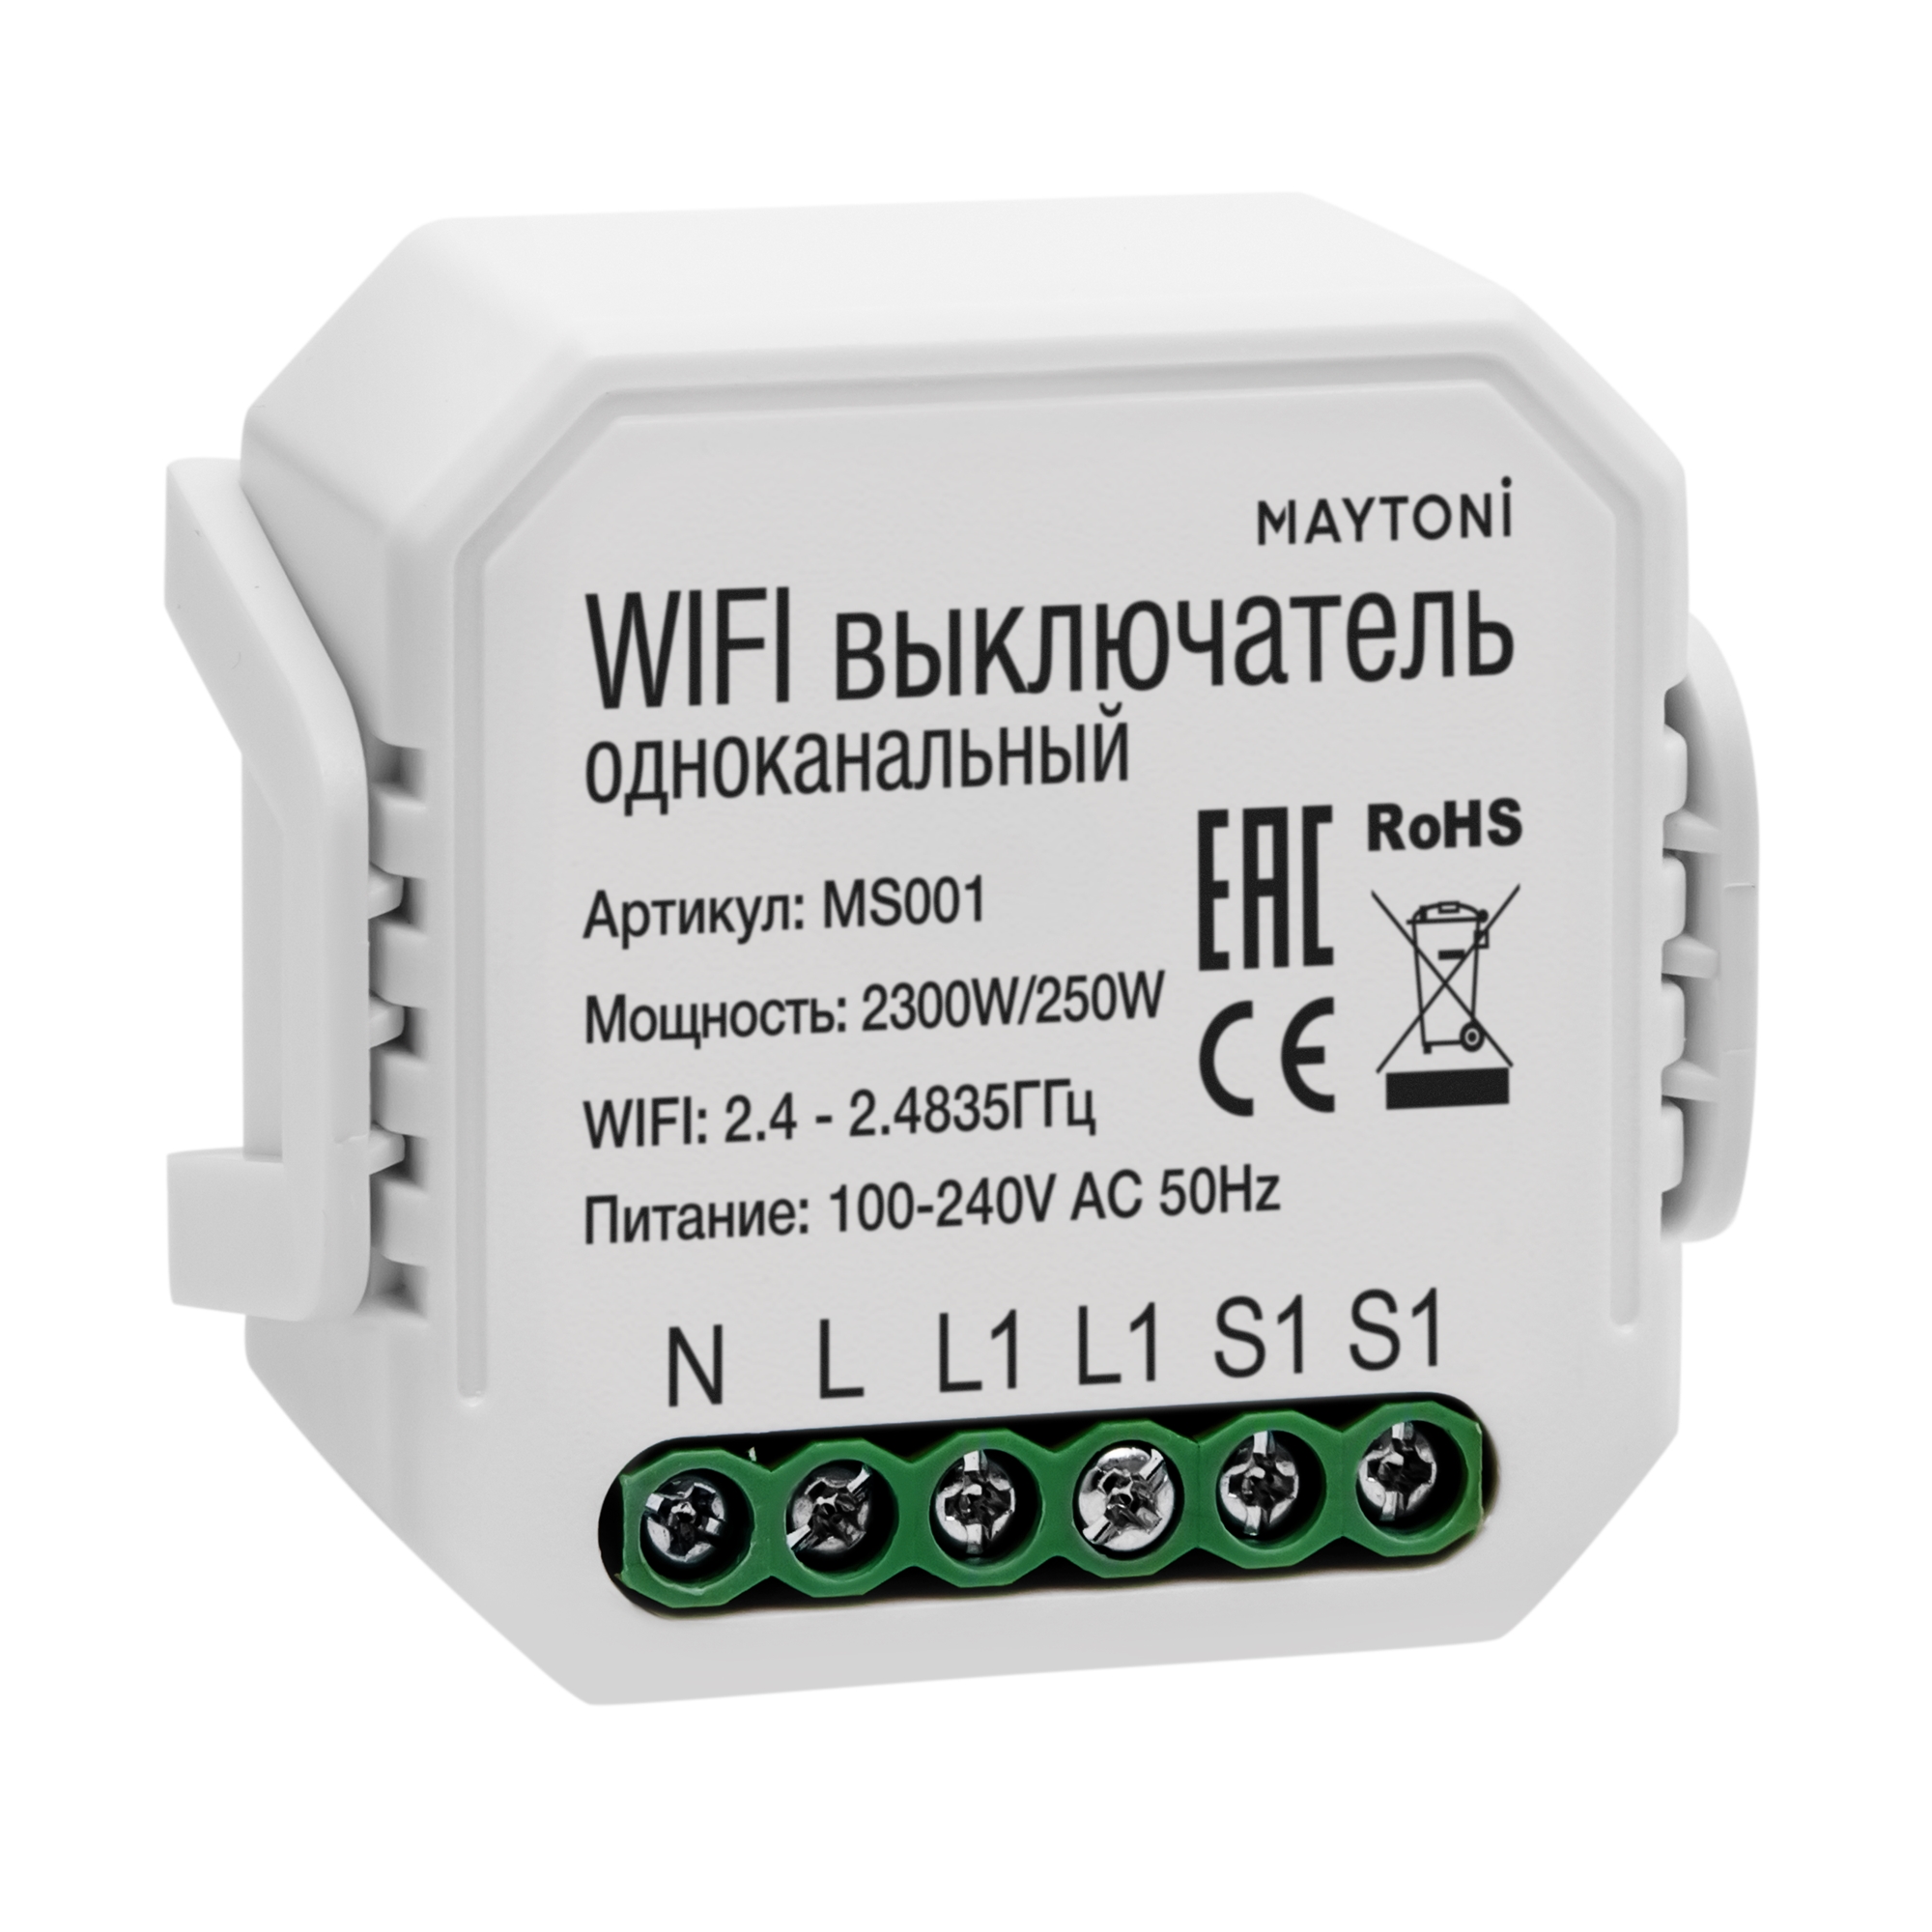 WI-FI выключатель одноканальный Technical MS001 wi fi выключатель одноканальный technical ms001